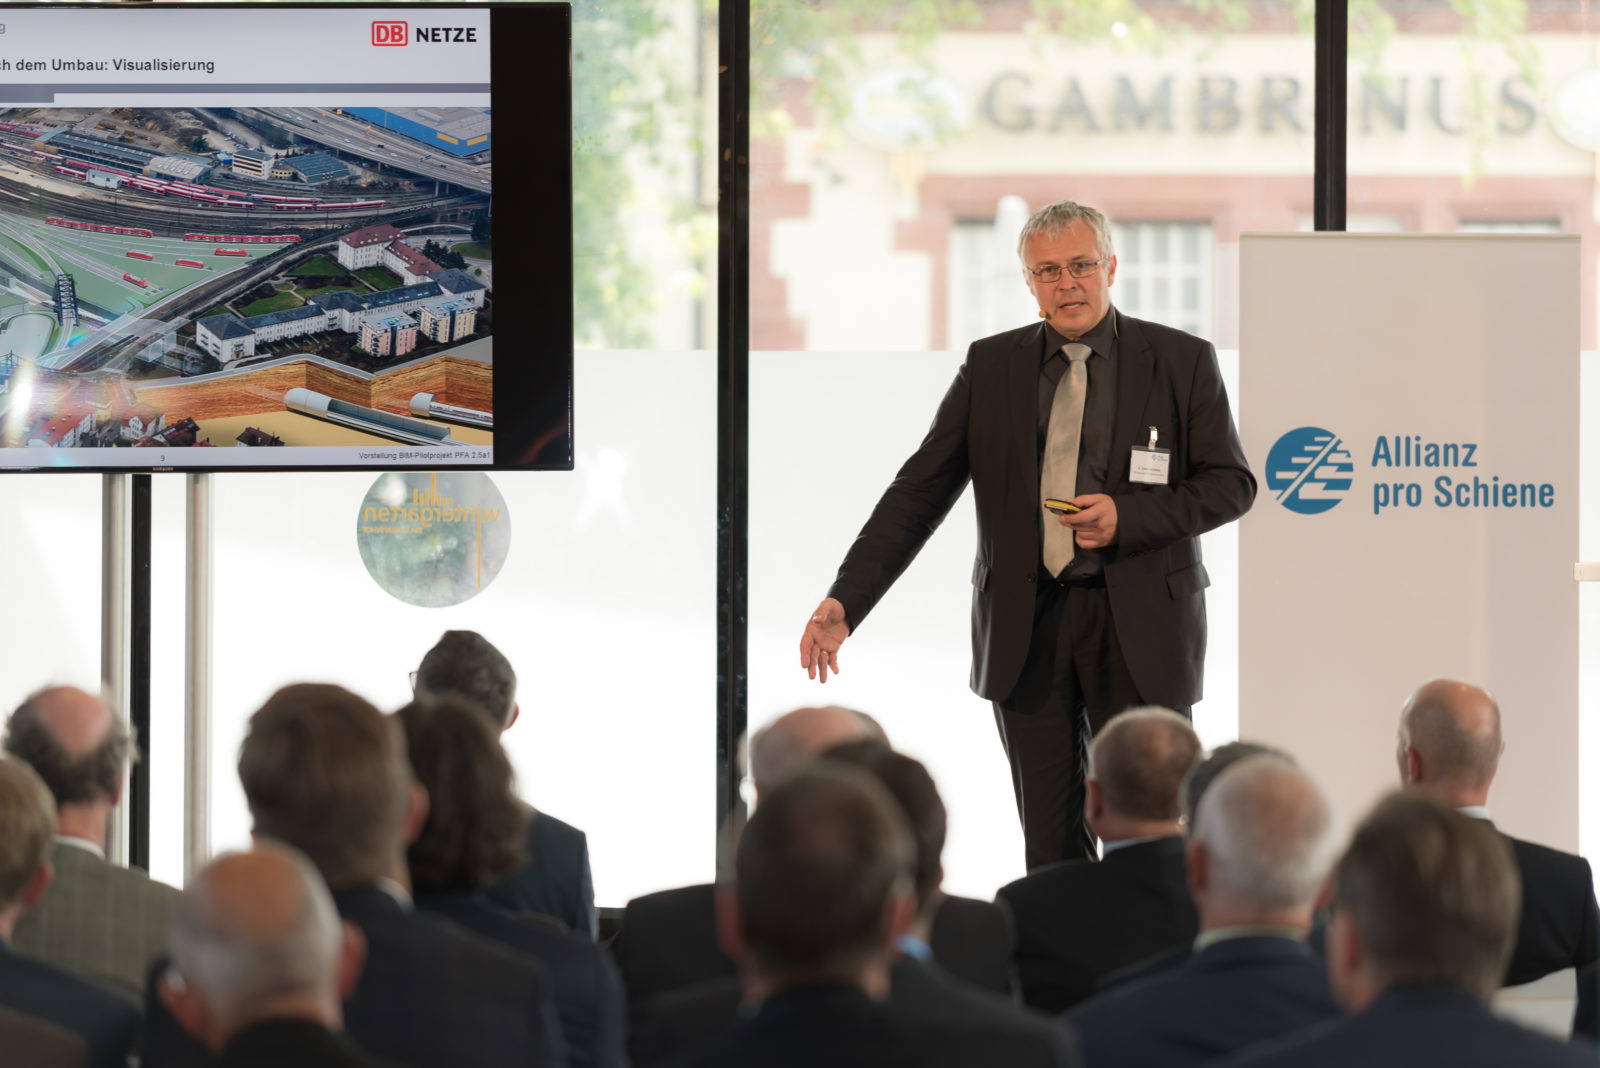 Einblicke in ein Großbauprojekt: Dr. Kielbassa stellt den neuen Bahnhof Ulm vor